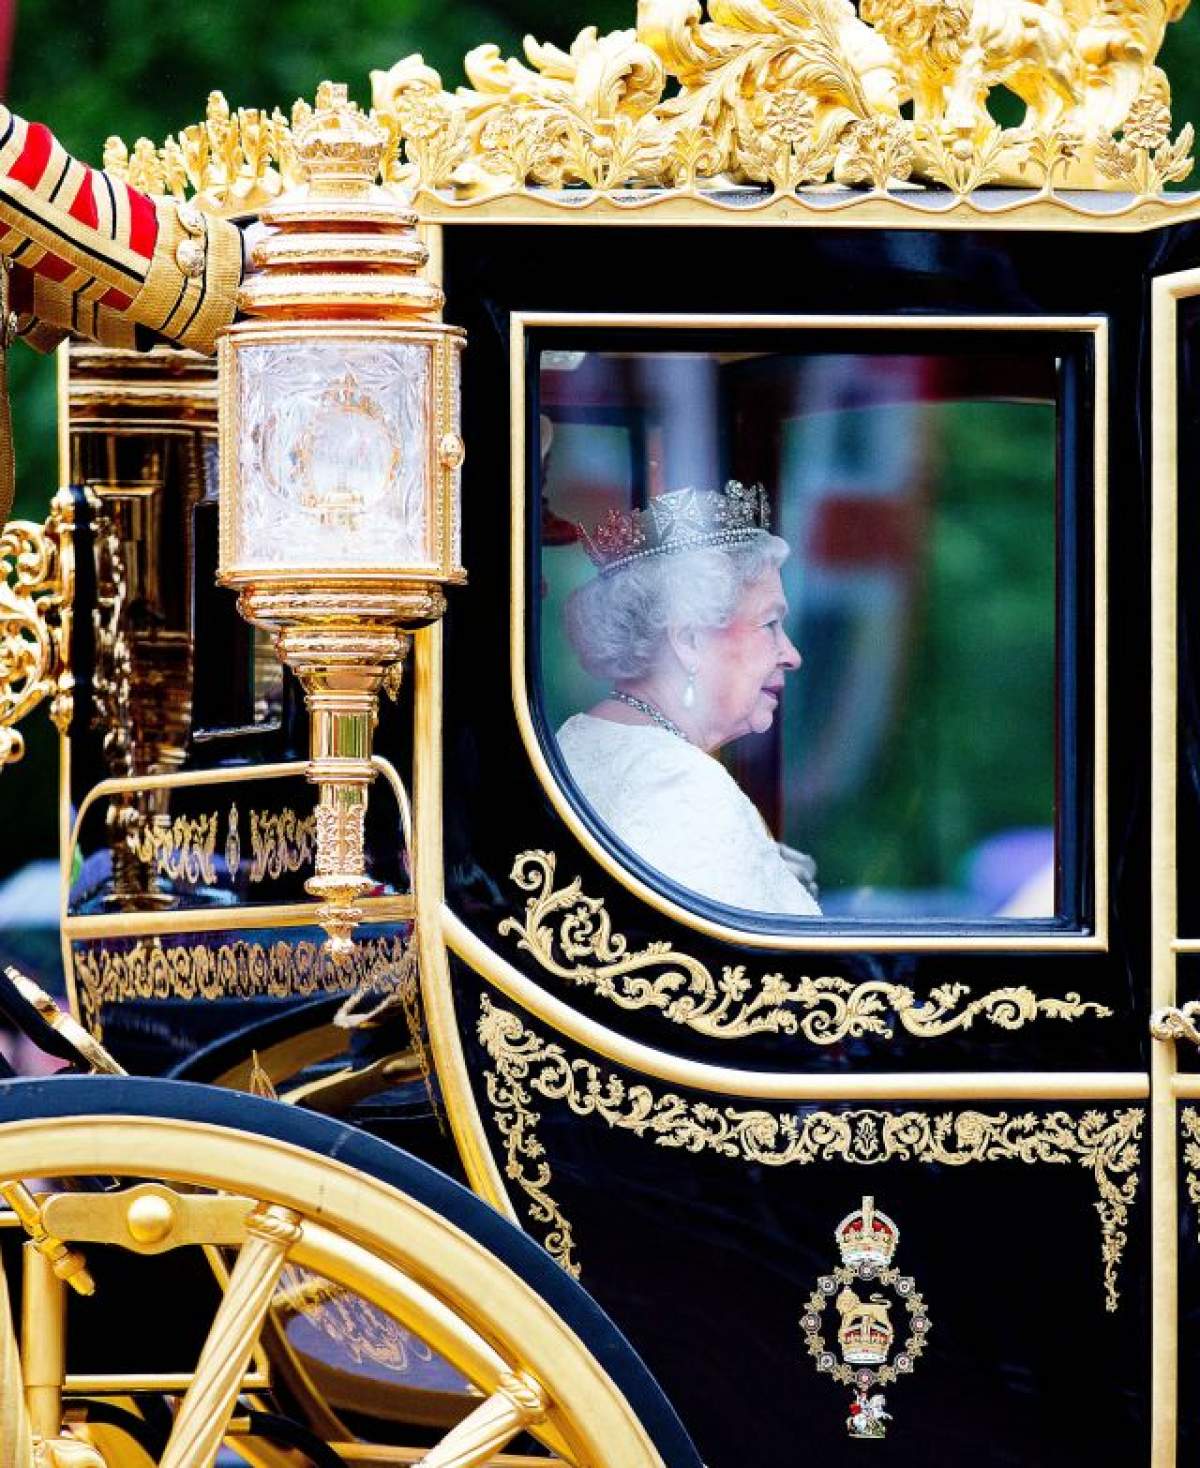 Regina Elisabeta a II-a a Marii Britanii împlineşte 89 de ani! Cele mai frumoase imagini cu suverana!